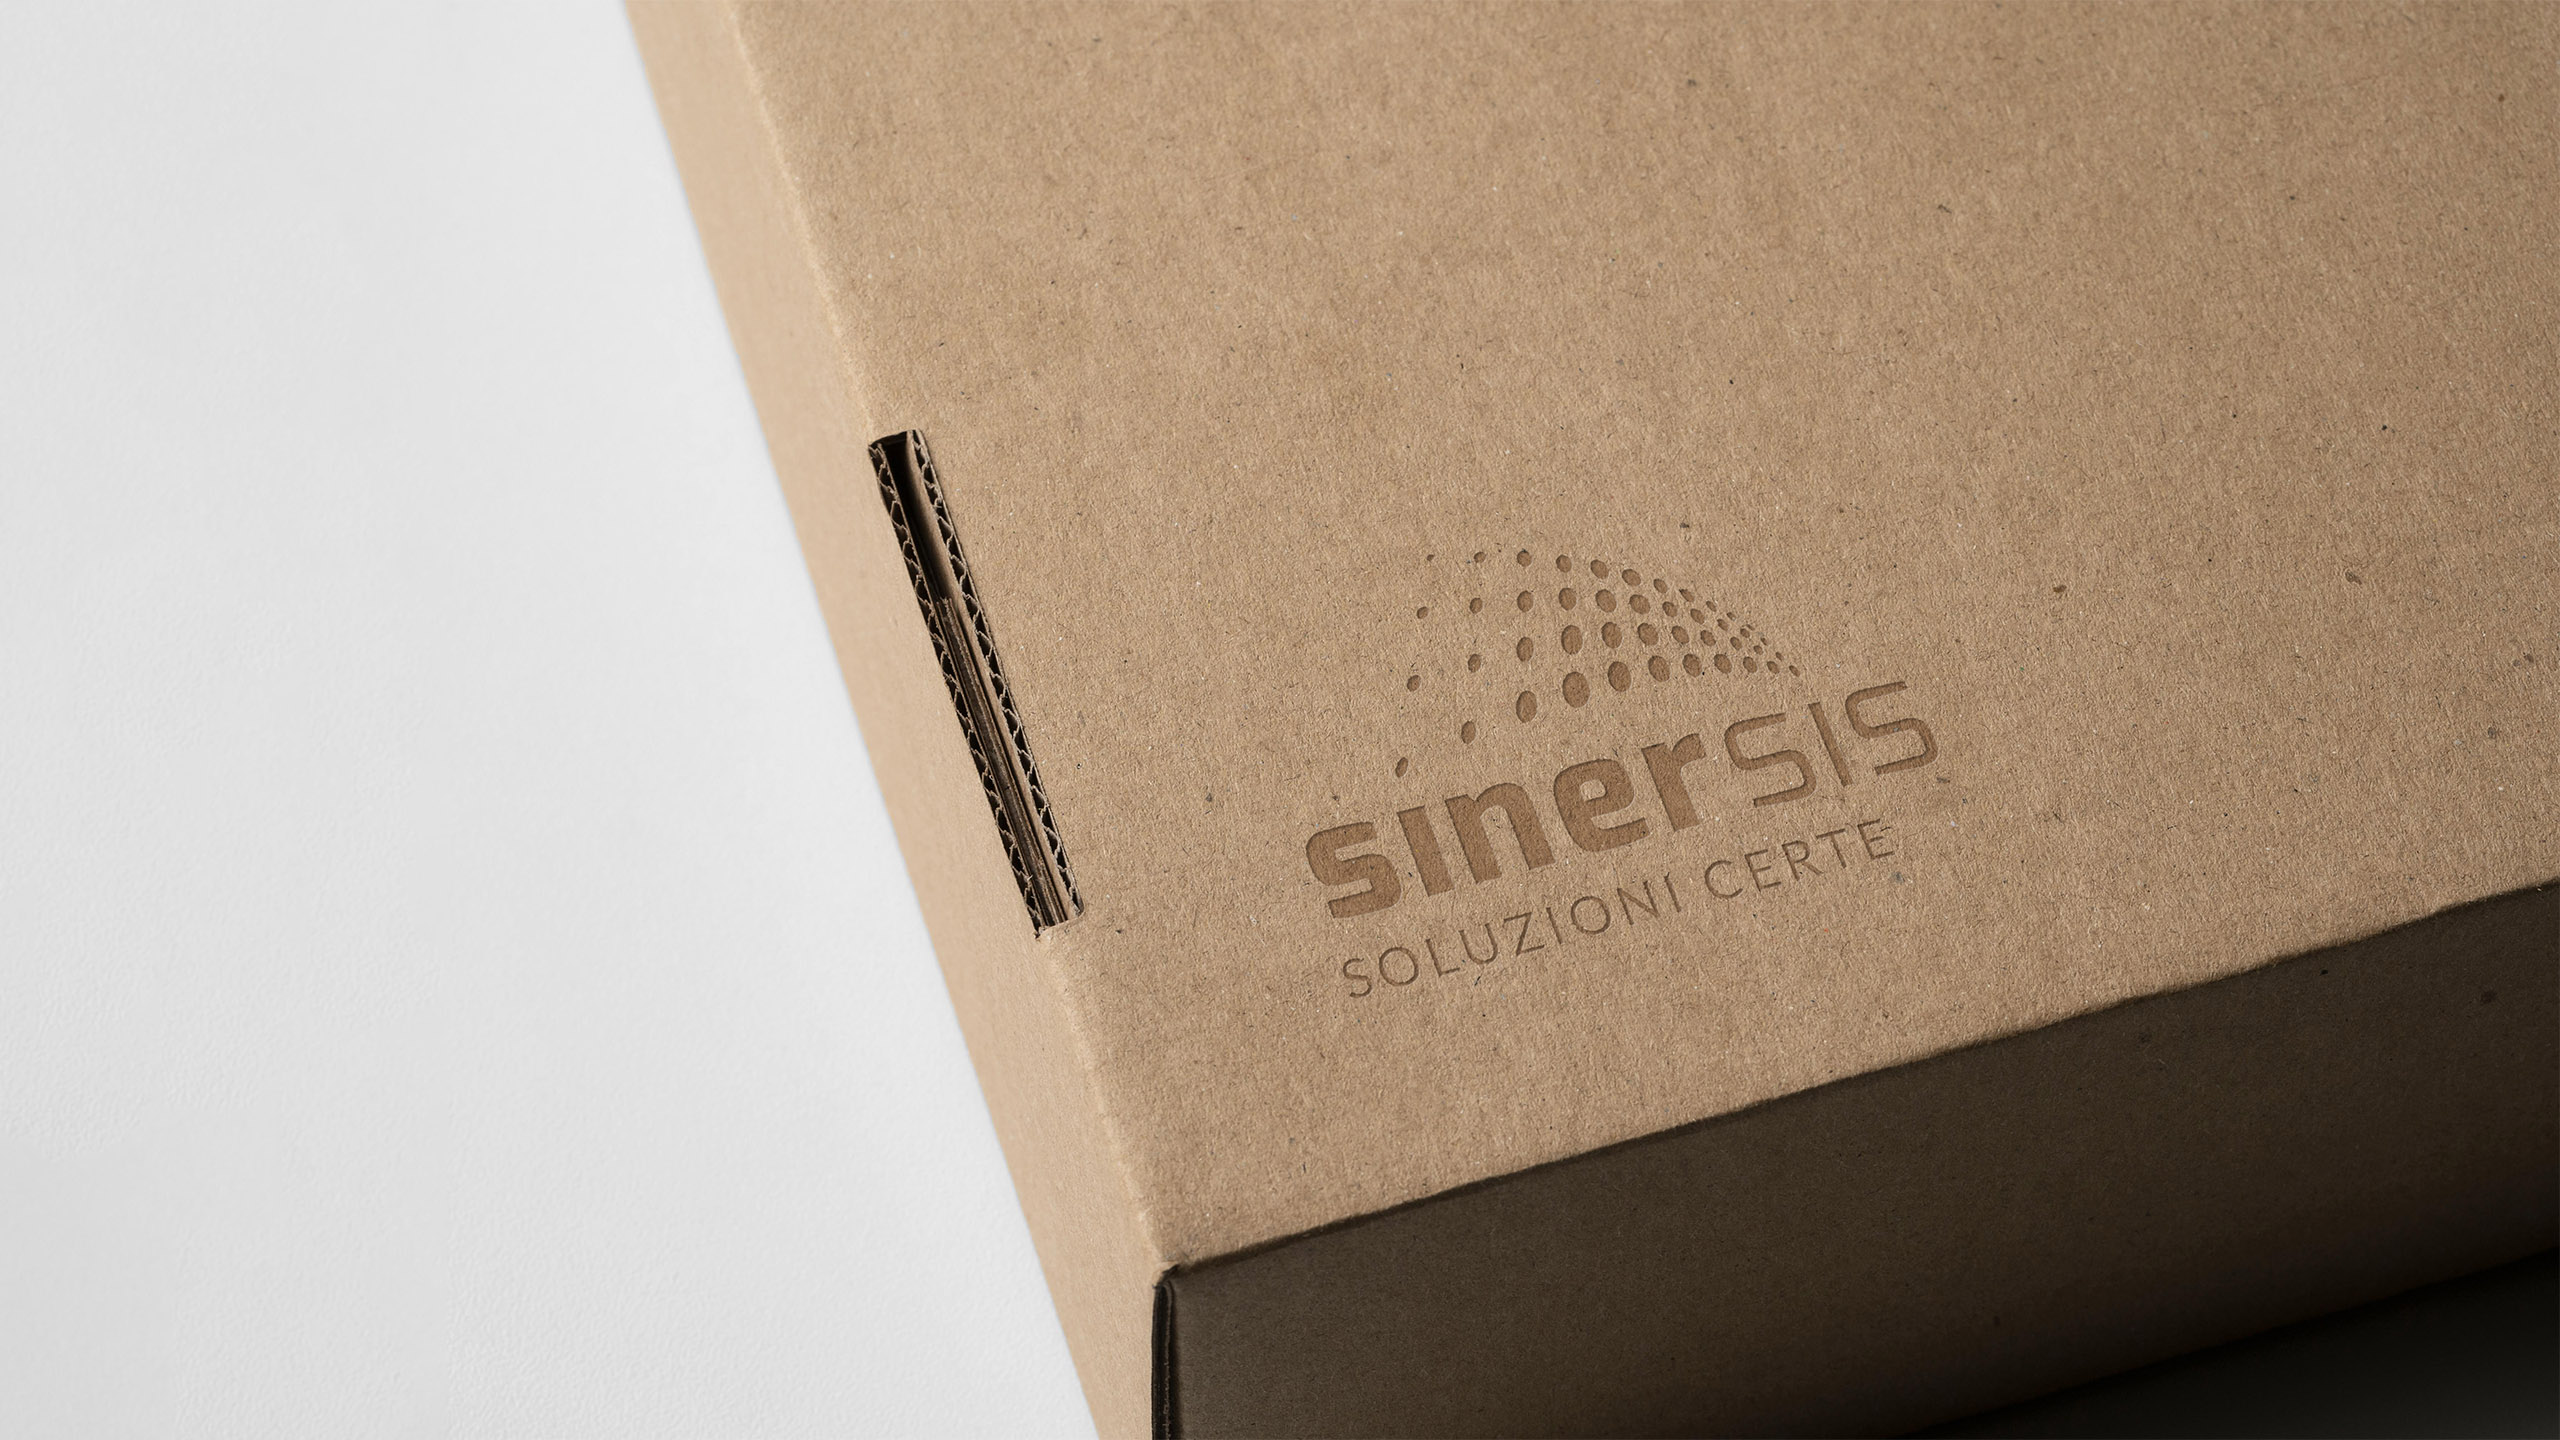 01_sinersis logo